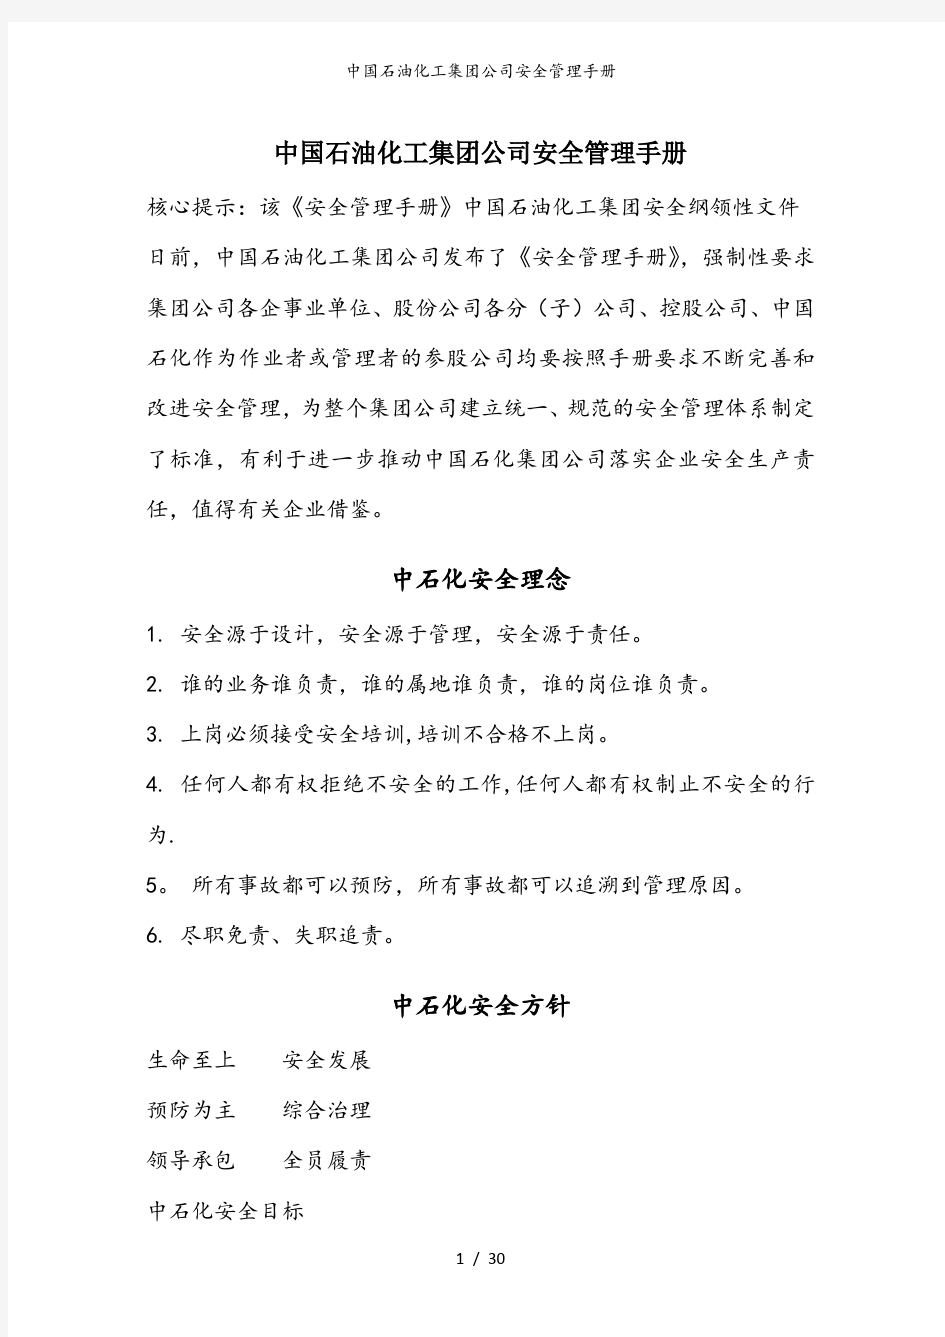 中国石油化工集团公司安全管理手册